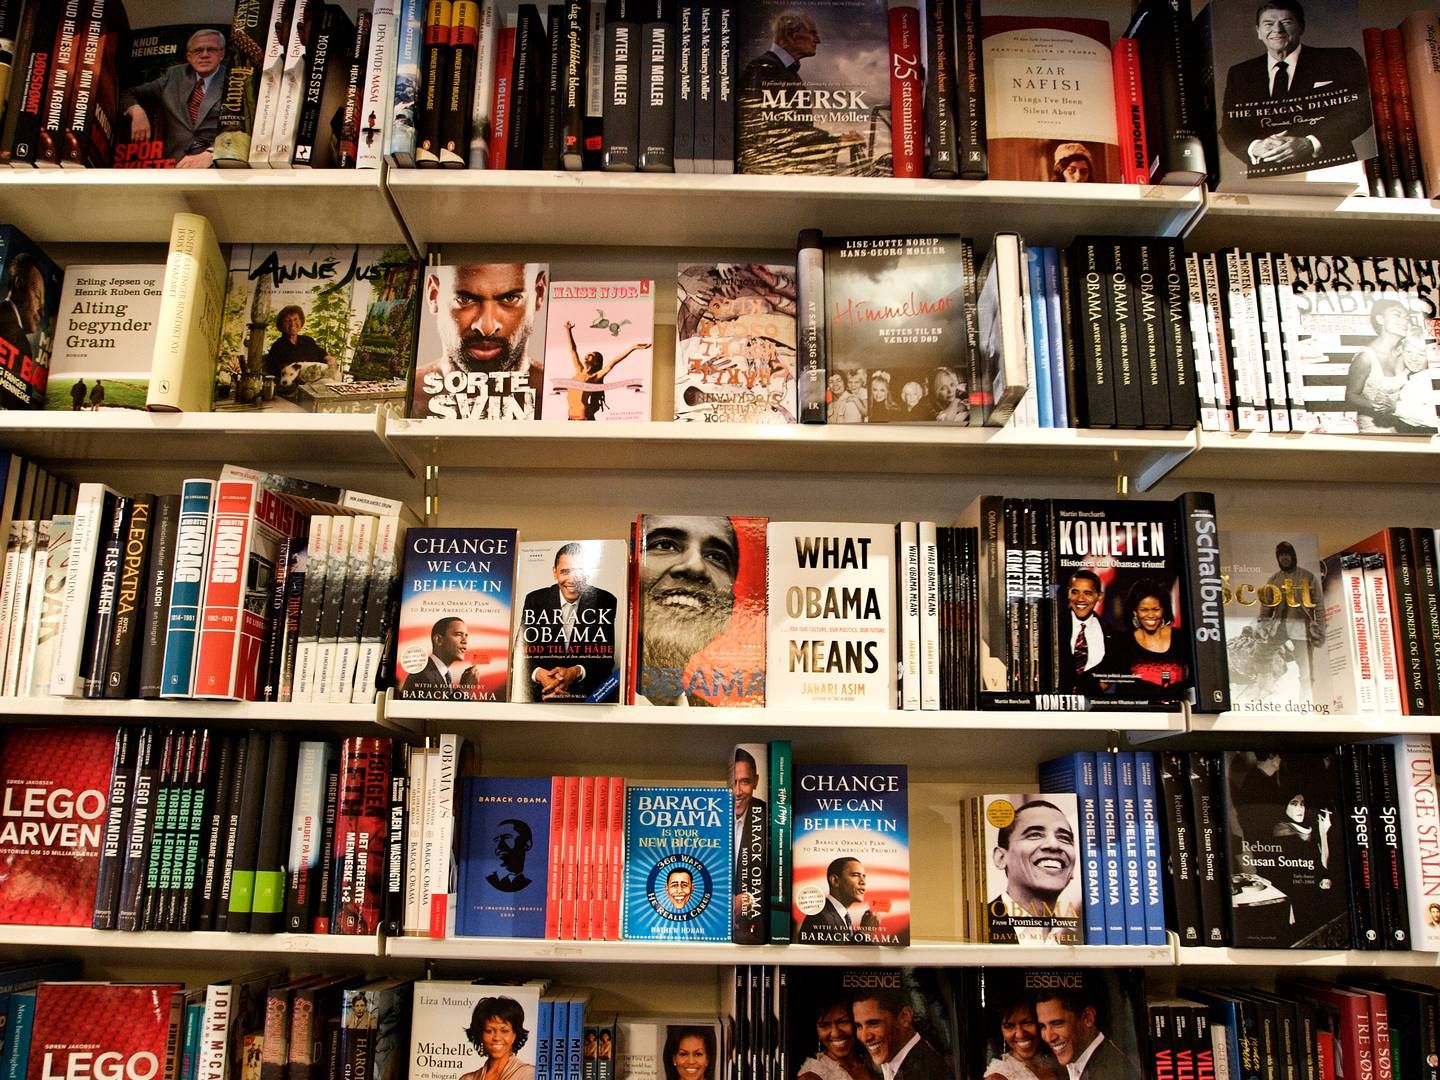 Danmark er eneste land i EU med fuld moms på bøger, mens eksempelvis Sverige har en bogmoms på 6 pct. og Norge, Irland og Storbritannien helt har fjernet momsen på bøger. | Foto: Jens Dresling/Politiken/Ritzau Scanpix